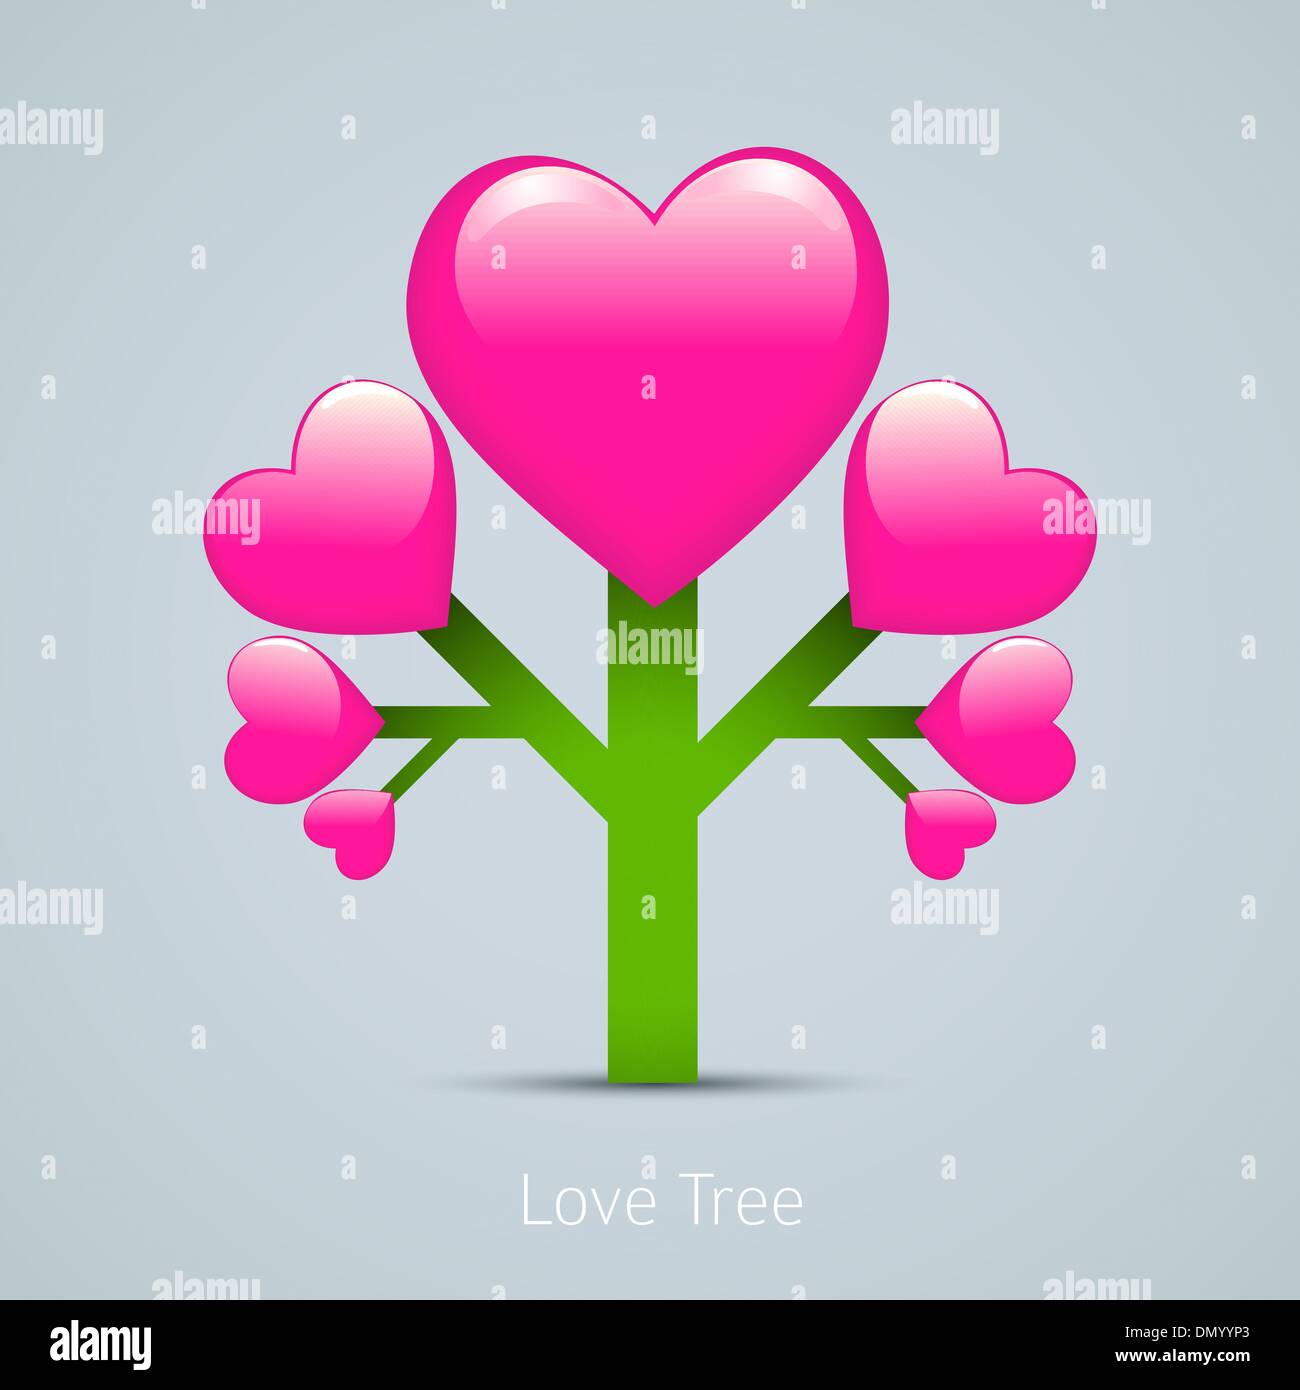 Liebe kreative Konzeption Illustration. Baumsymbol mit hea Stock Vektor